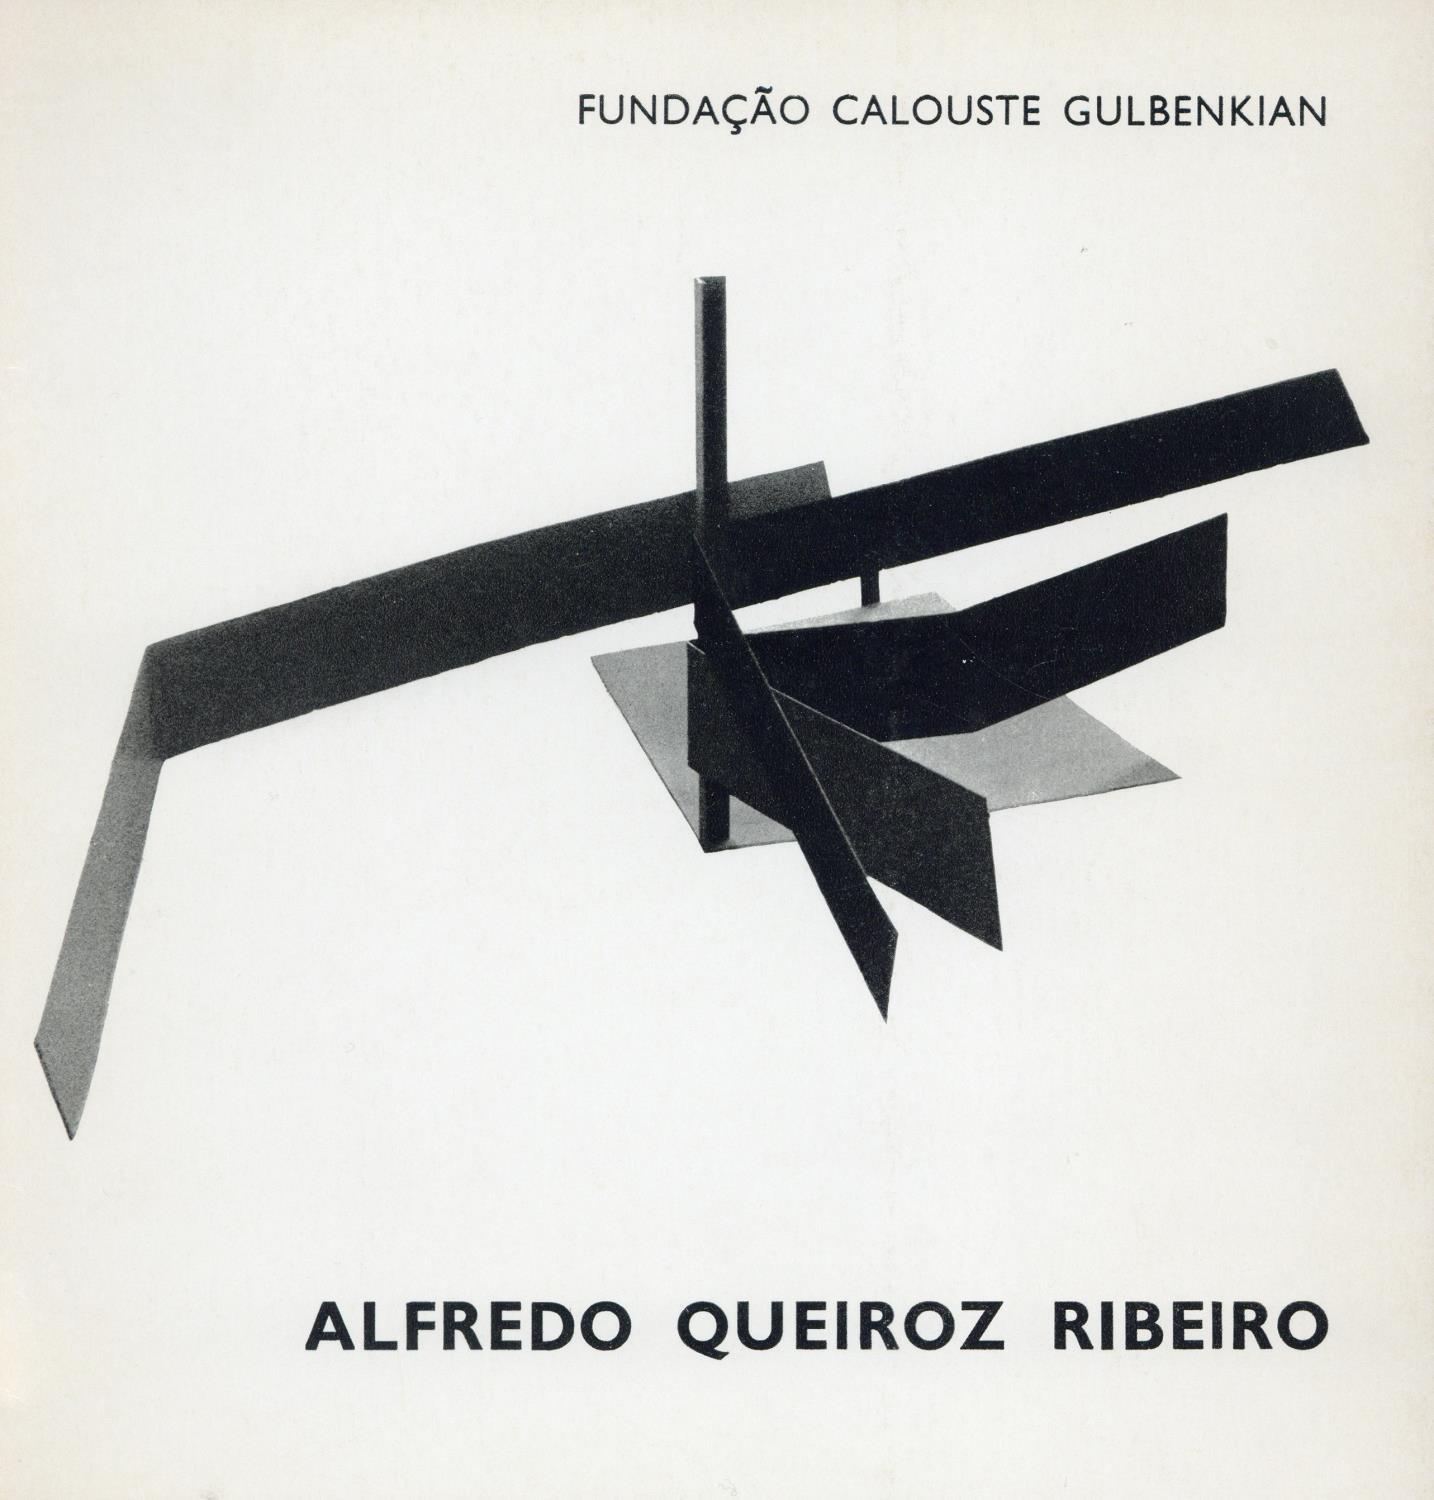 Alfredo Queiroz Ribeiro